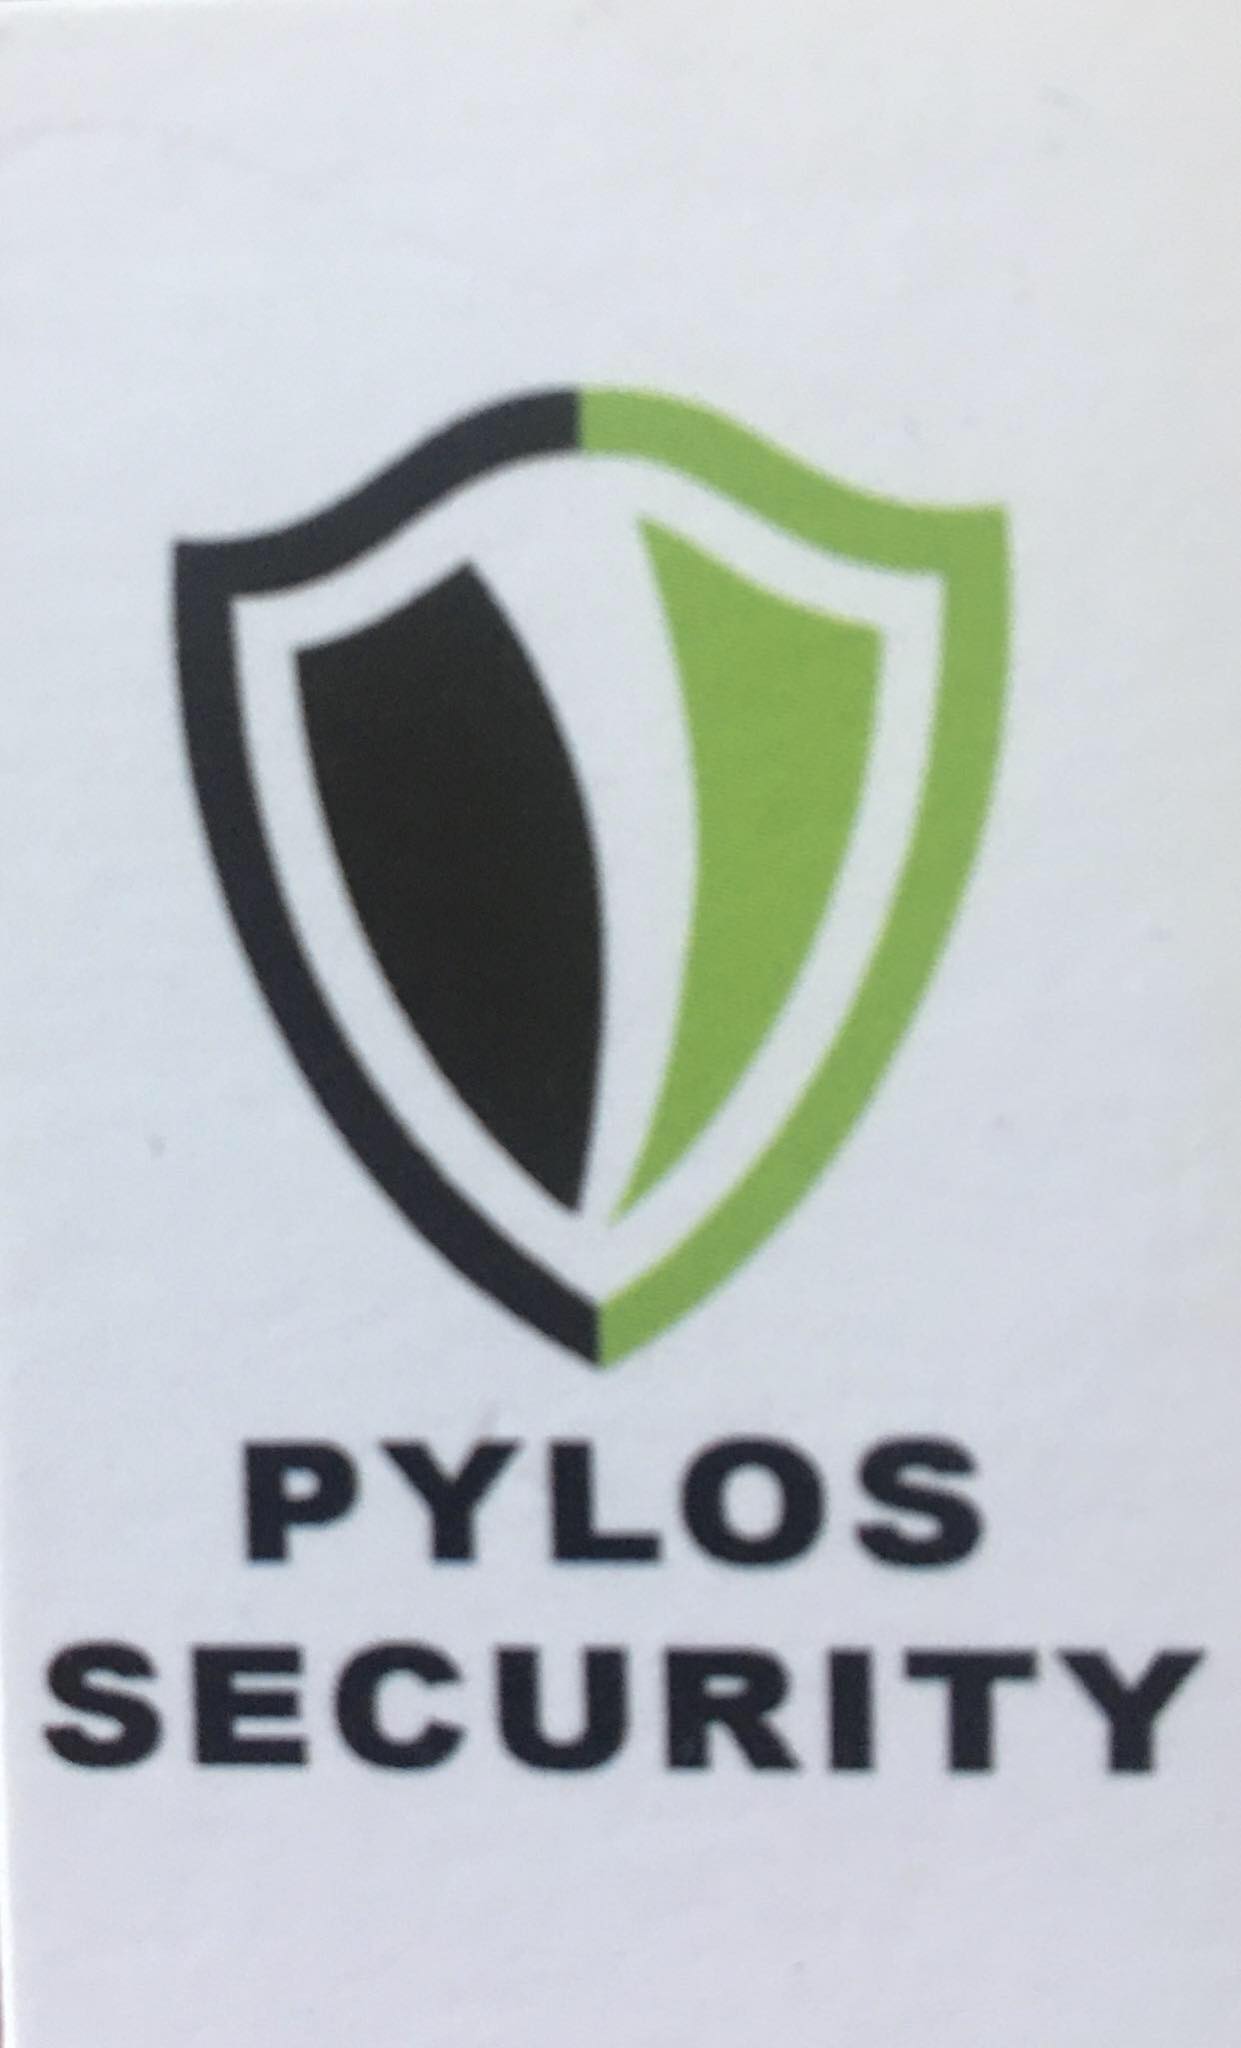 Pylos Security